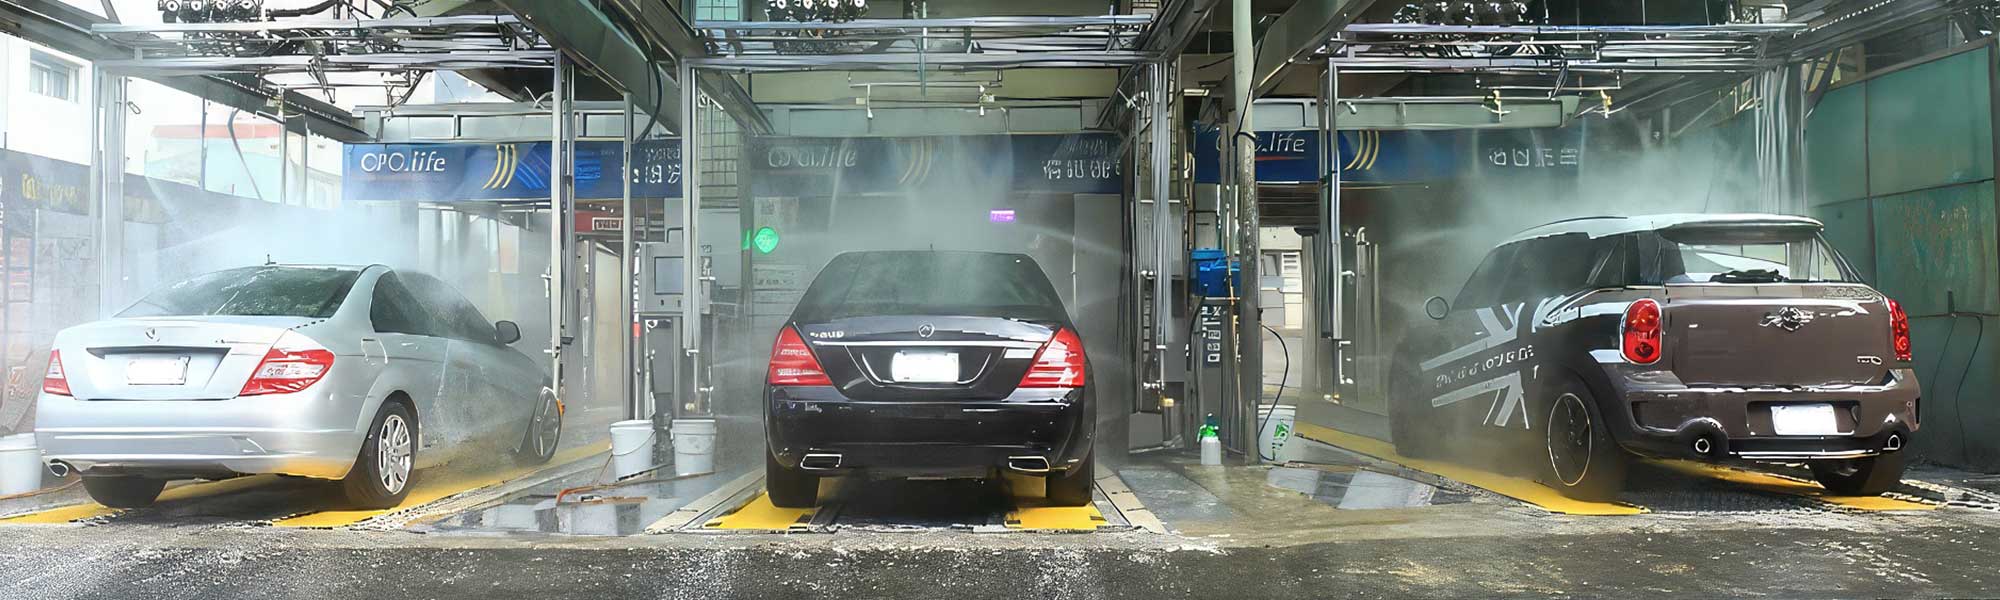 Válvulas en autoservicio de lavado de autos: mejorando el rendimiento y los resultados